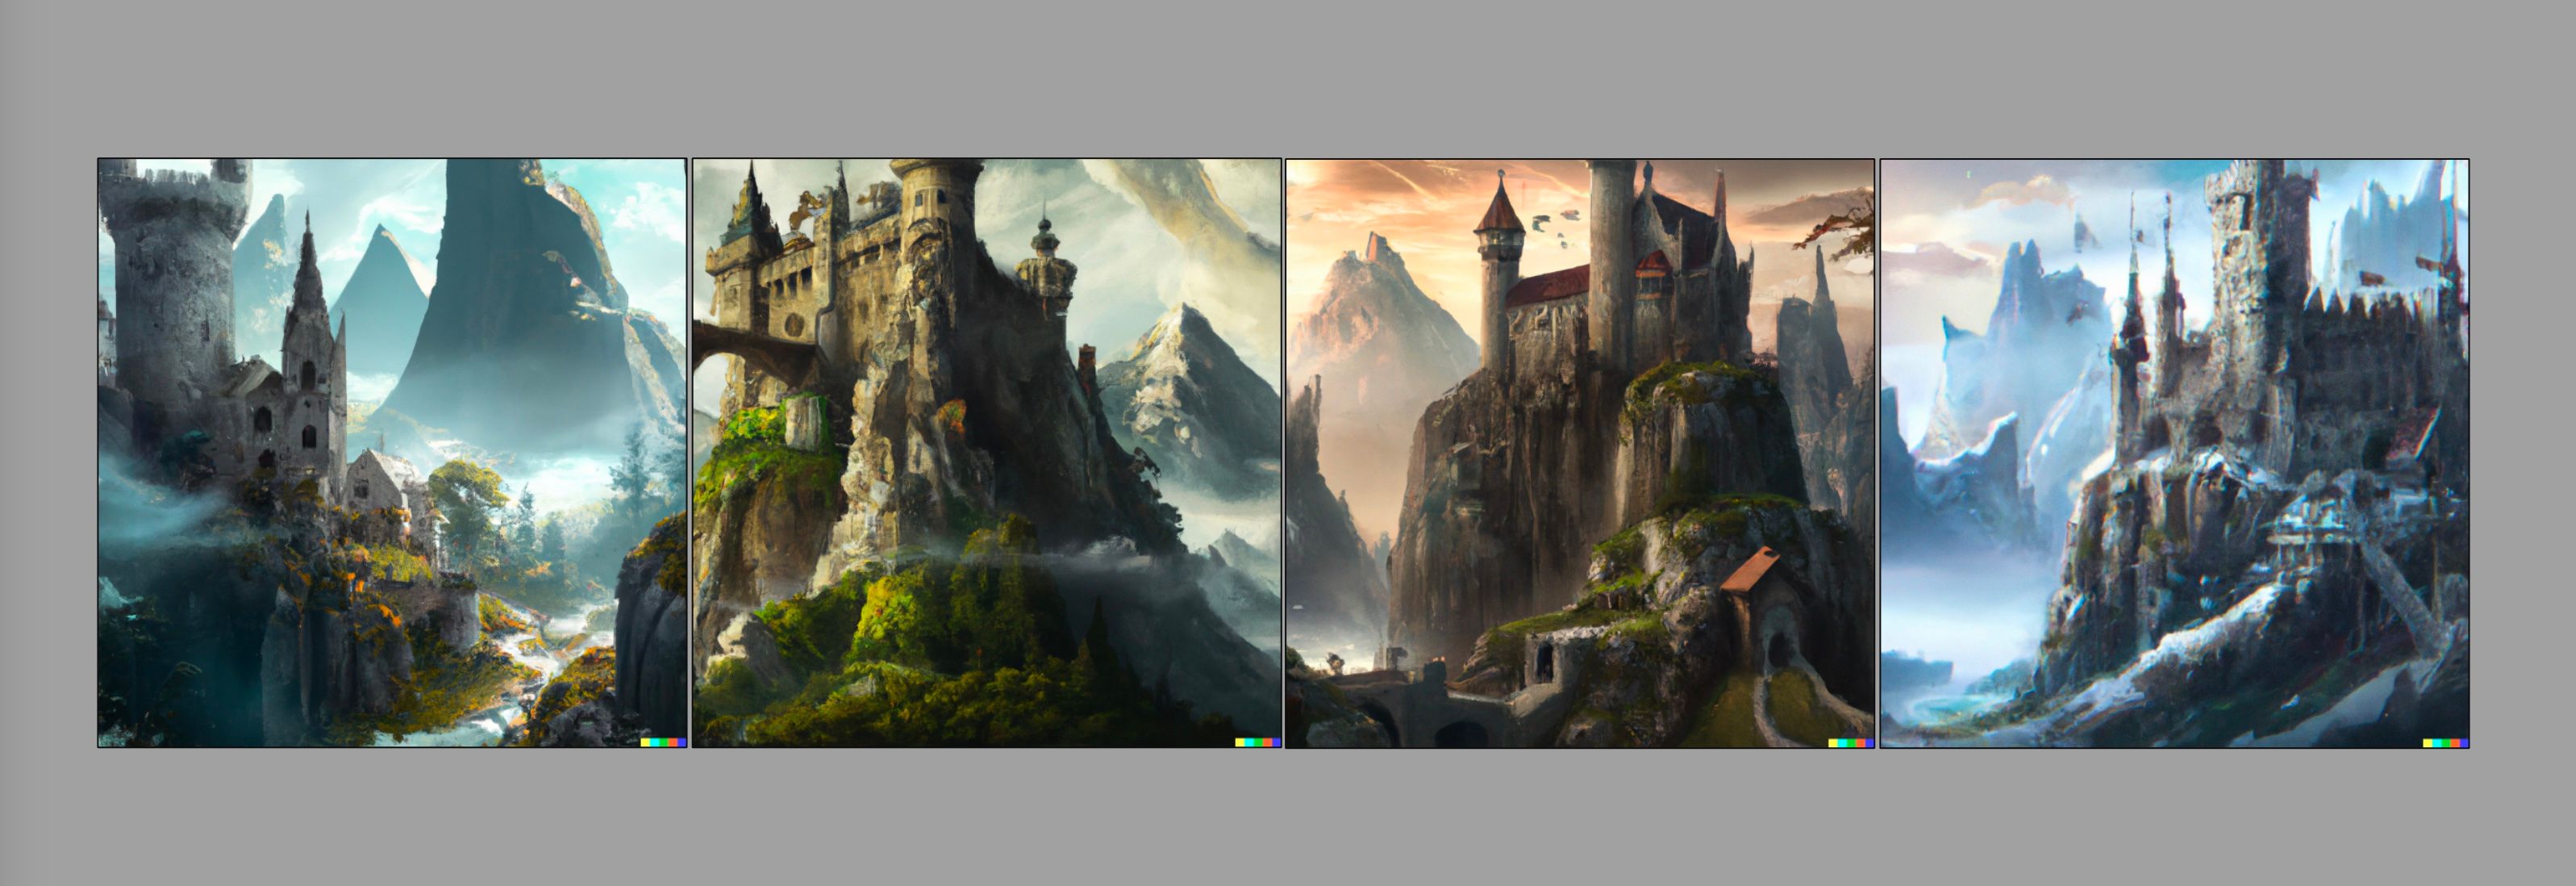 Quatro imagens de um castelo medieval com montanhas ao fundo, geradas com Dall-E